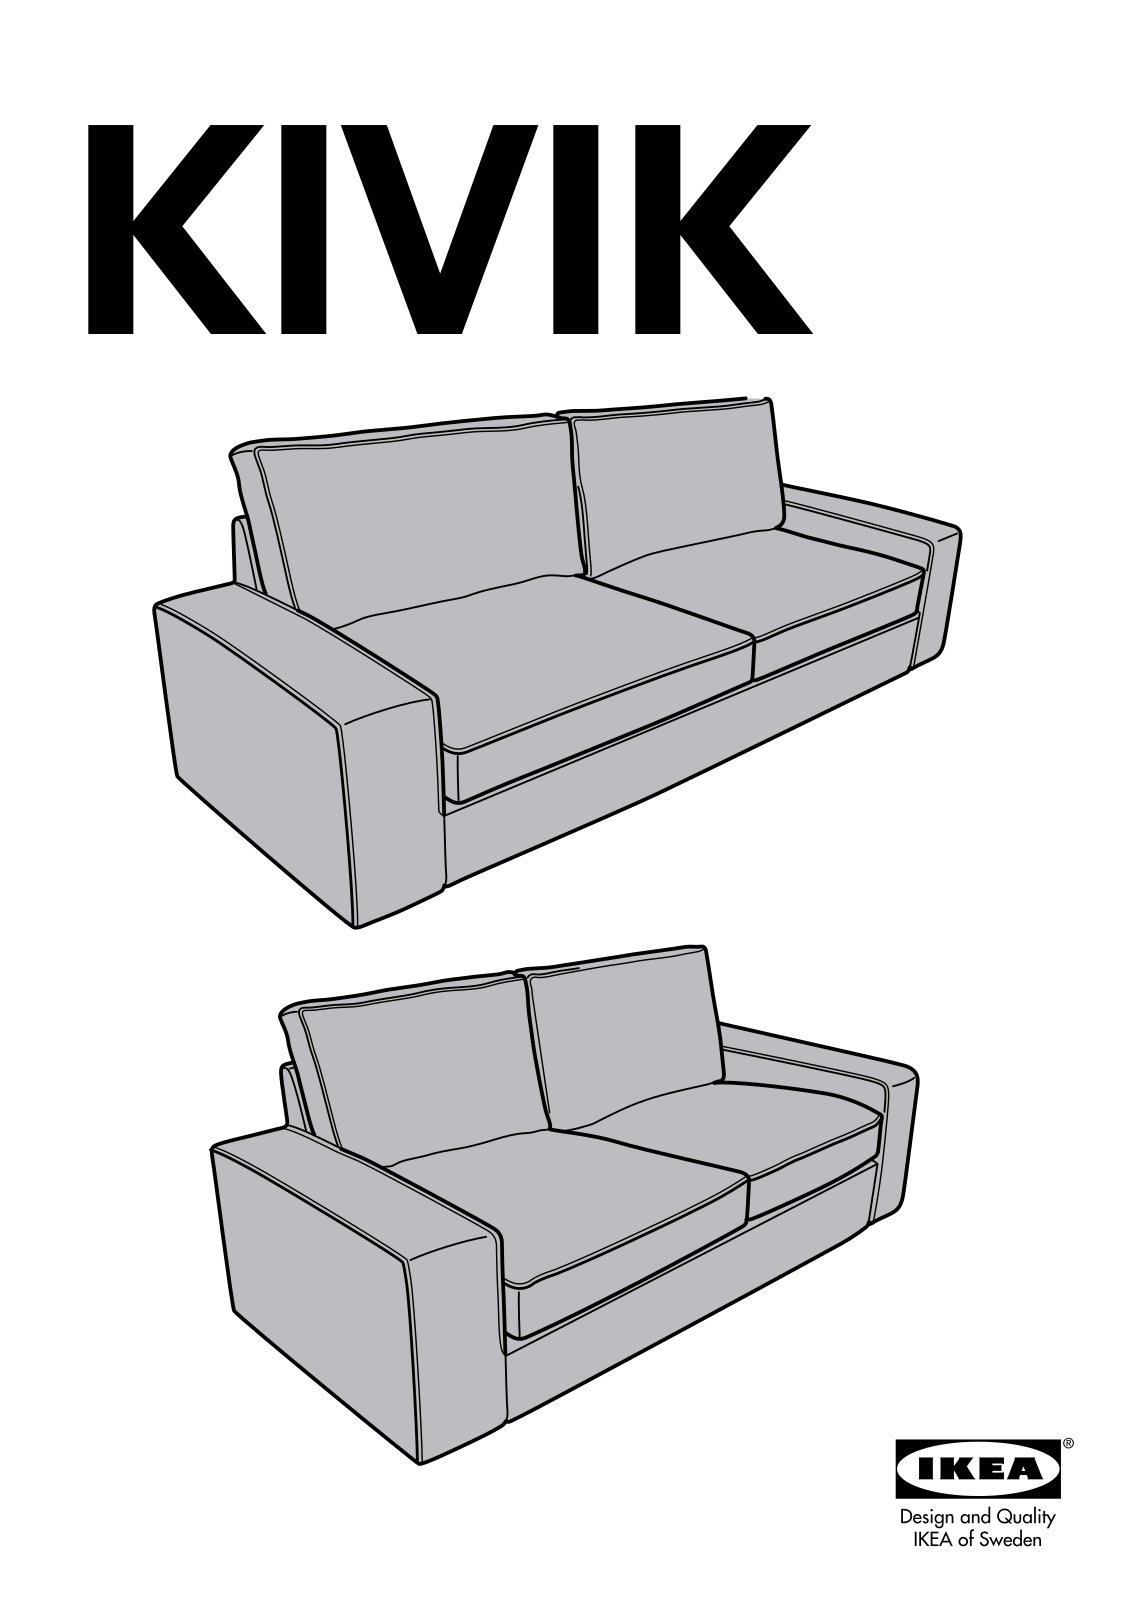 IKEA KIVIK SOFA, KIVIK LOVESEAT User Manual